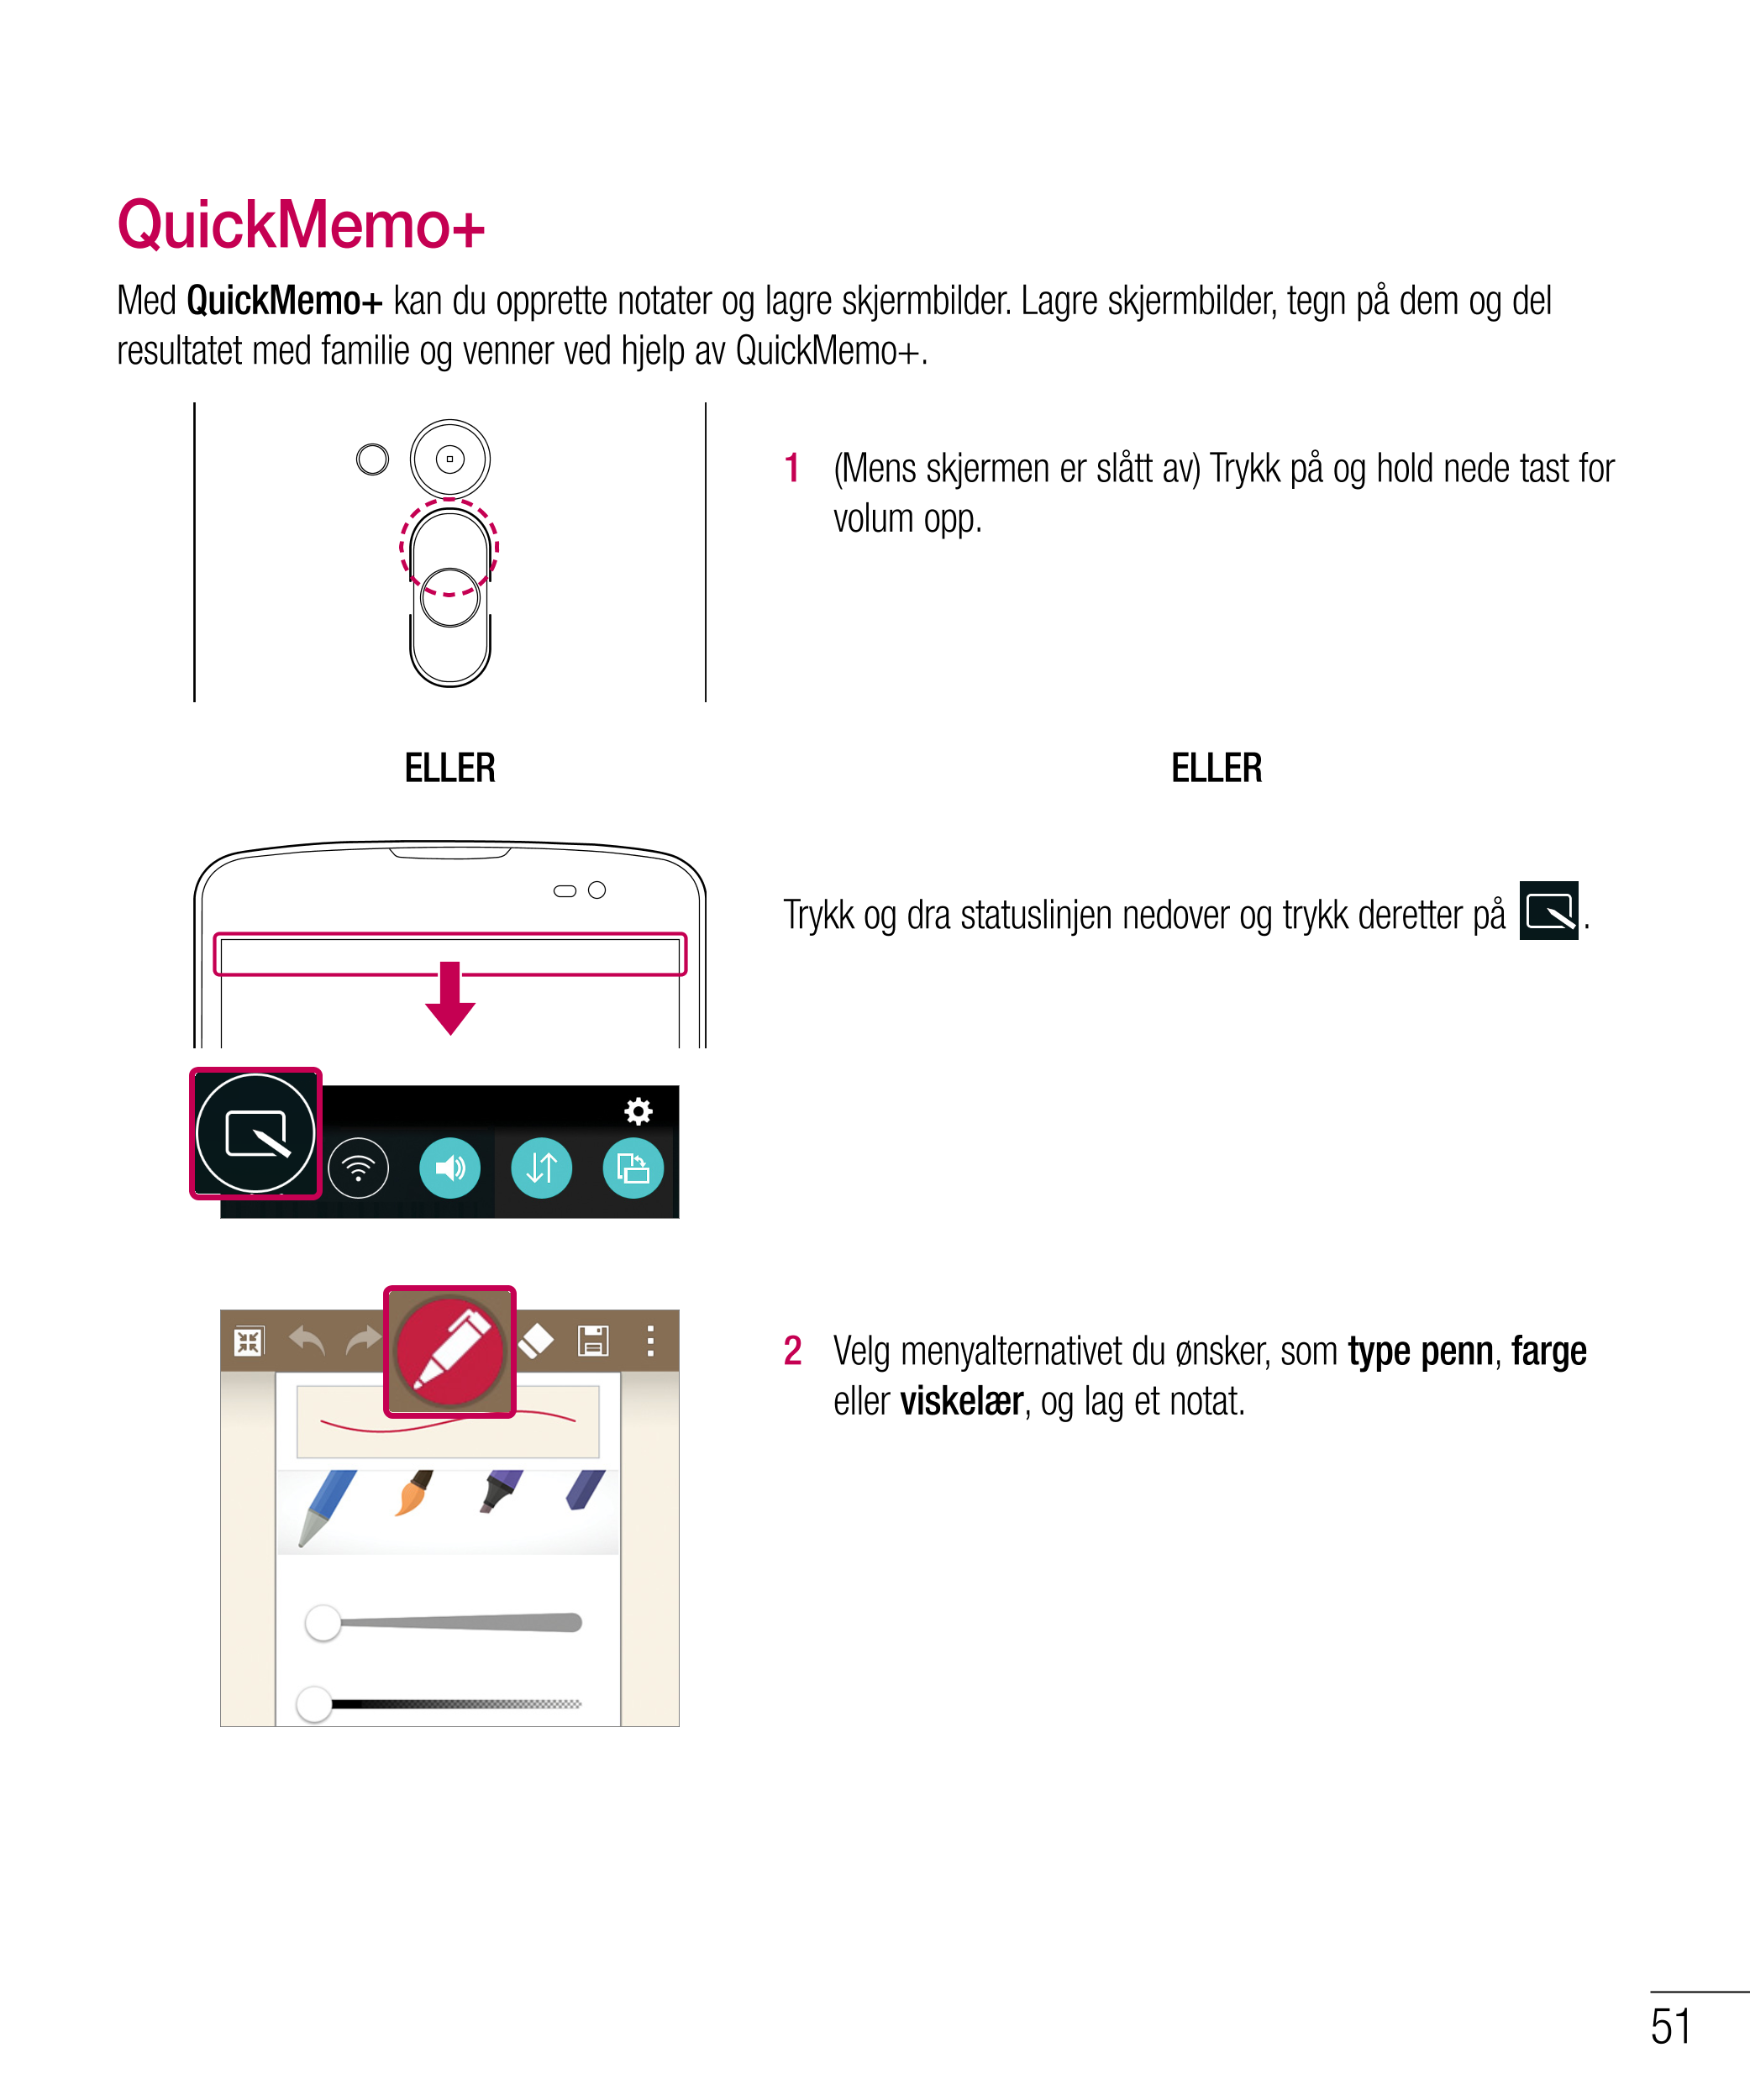 QuickMemo+
Med  QuickMemo+ kan du opprette notater og lagre skjermbilder. Lagre skjermbilder, tegn på dem og del 
resultatet med